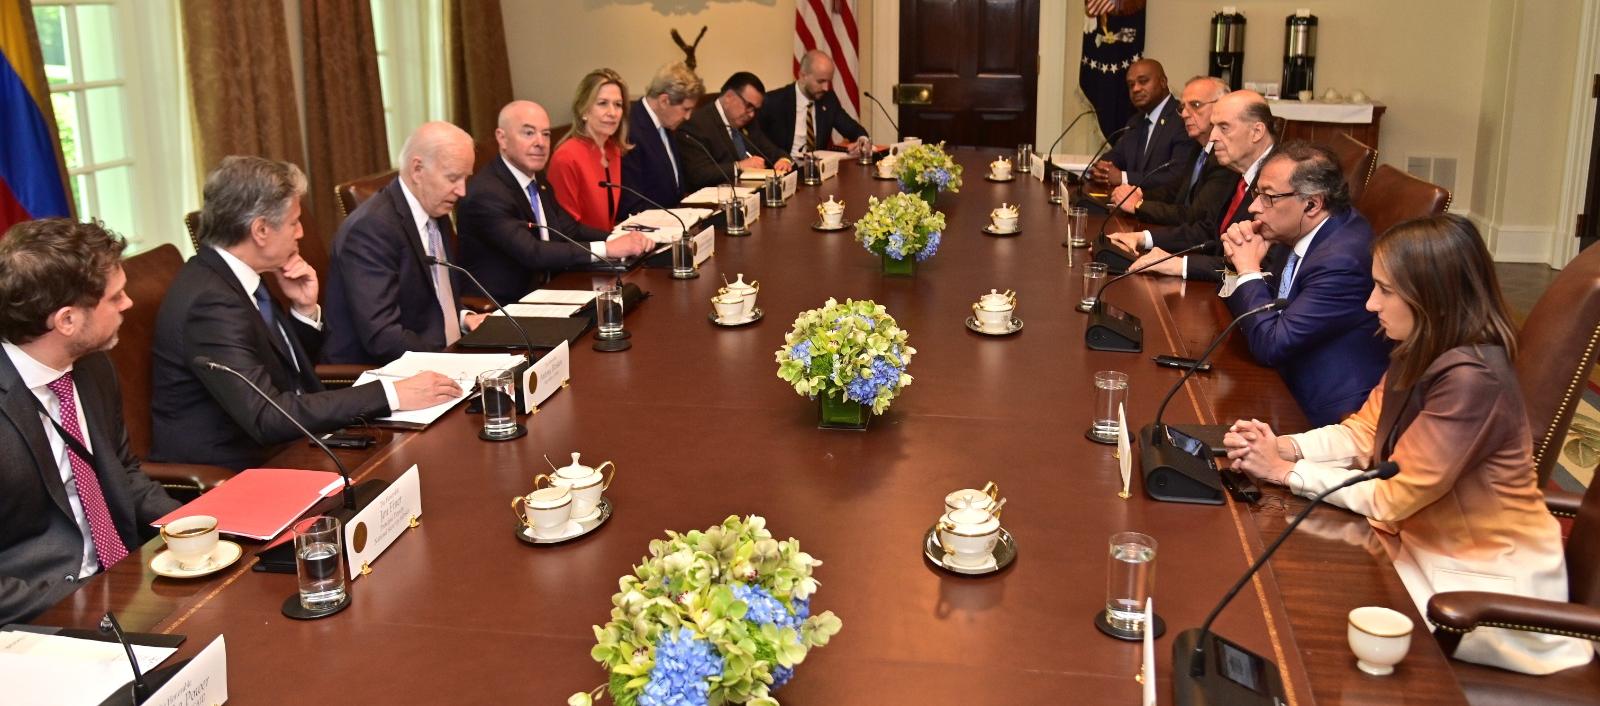 Los presidentes Biden y Petro en el encuentro de este jueves con sus respectivos equipos de trabajo